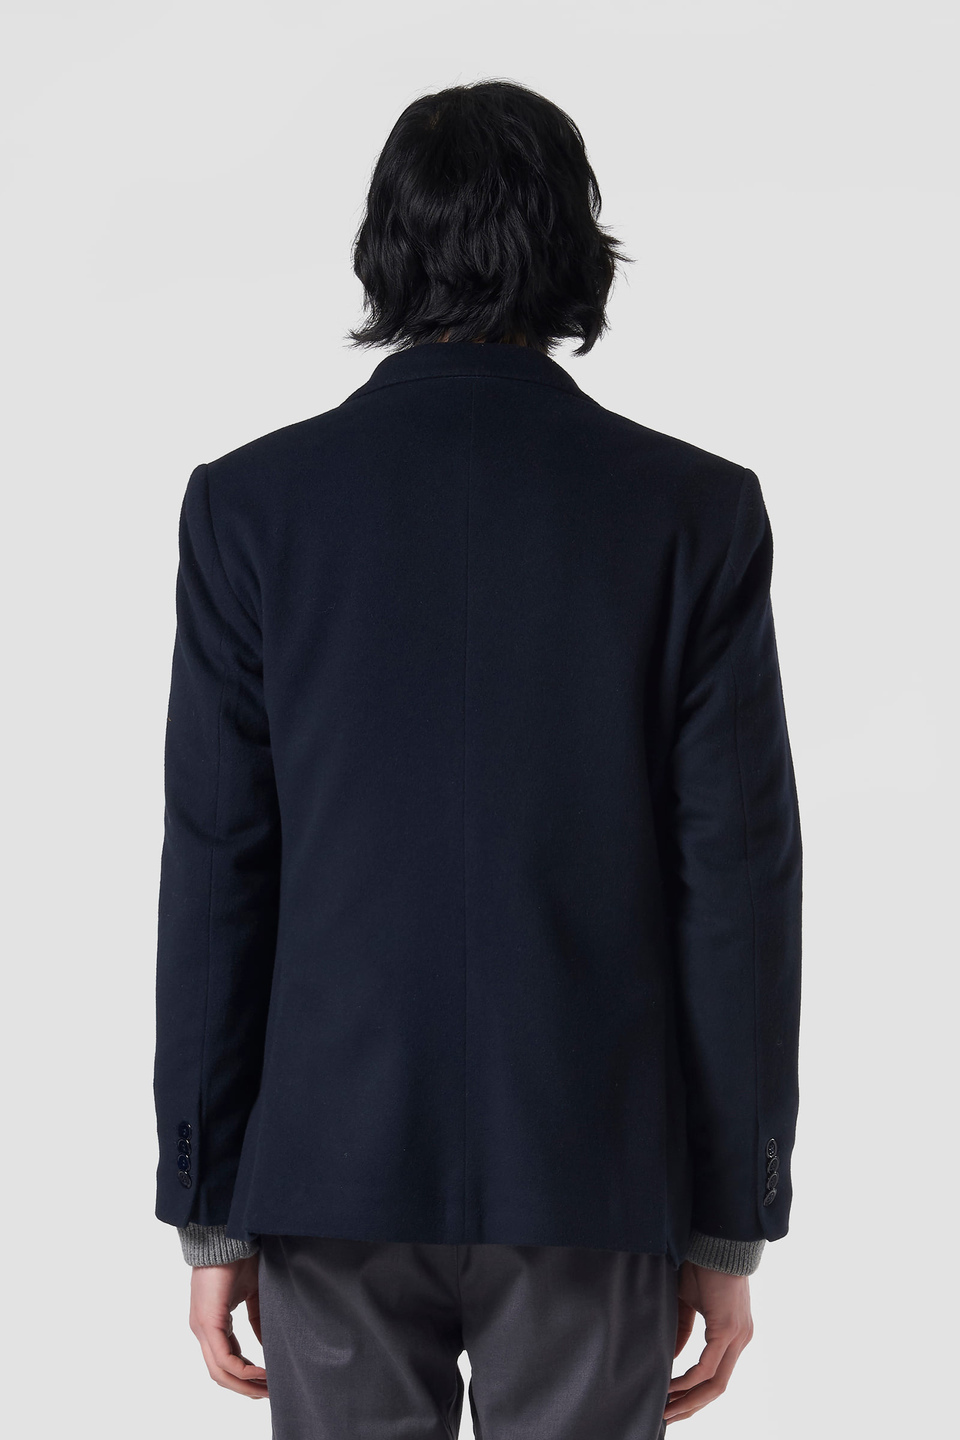 Men’s blazer jacket Blue Ribbon wool and cashmere regular fit | La Martina - Official Online Shop